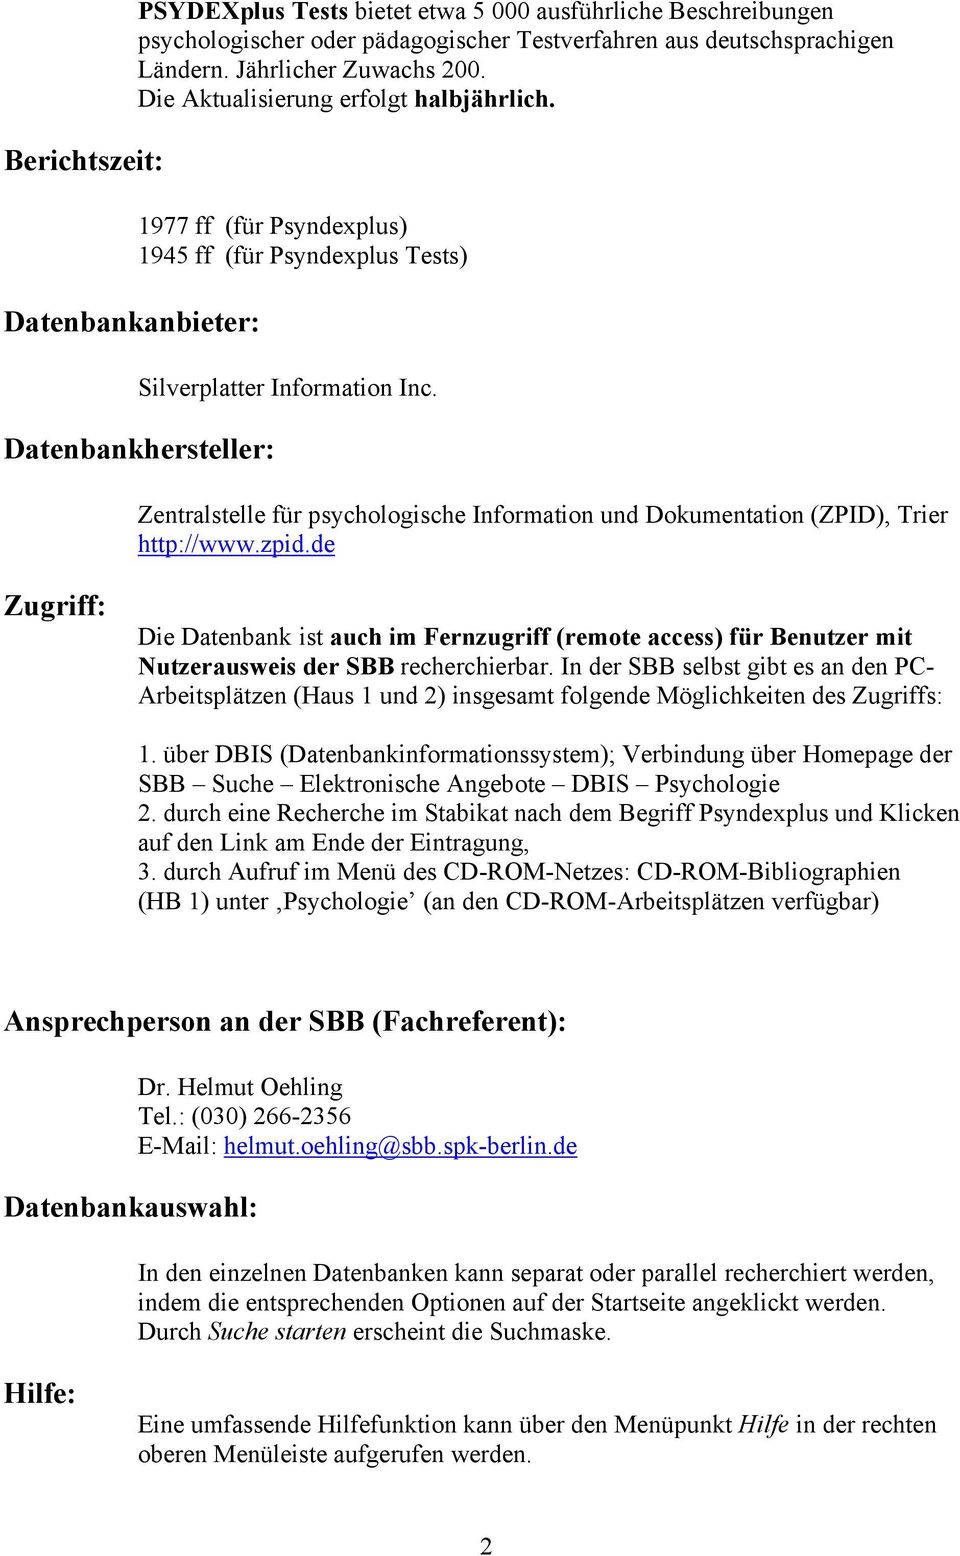 Datenbankhersteller: Zentralstelle für psychologische Information und Dokumentation (ZPID), Trier http://www.zpid.